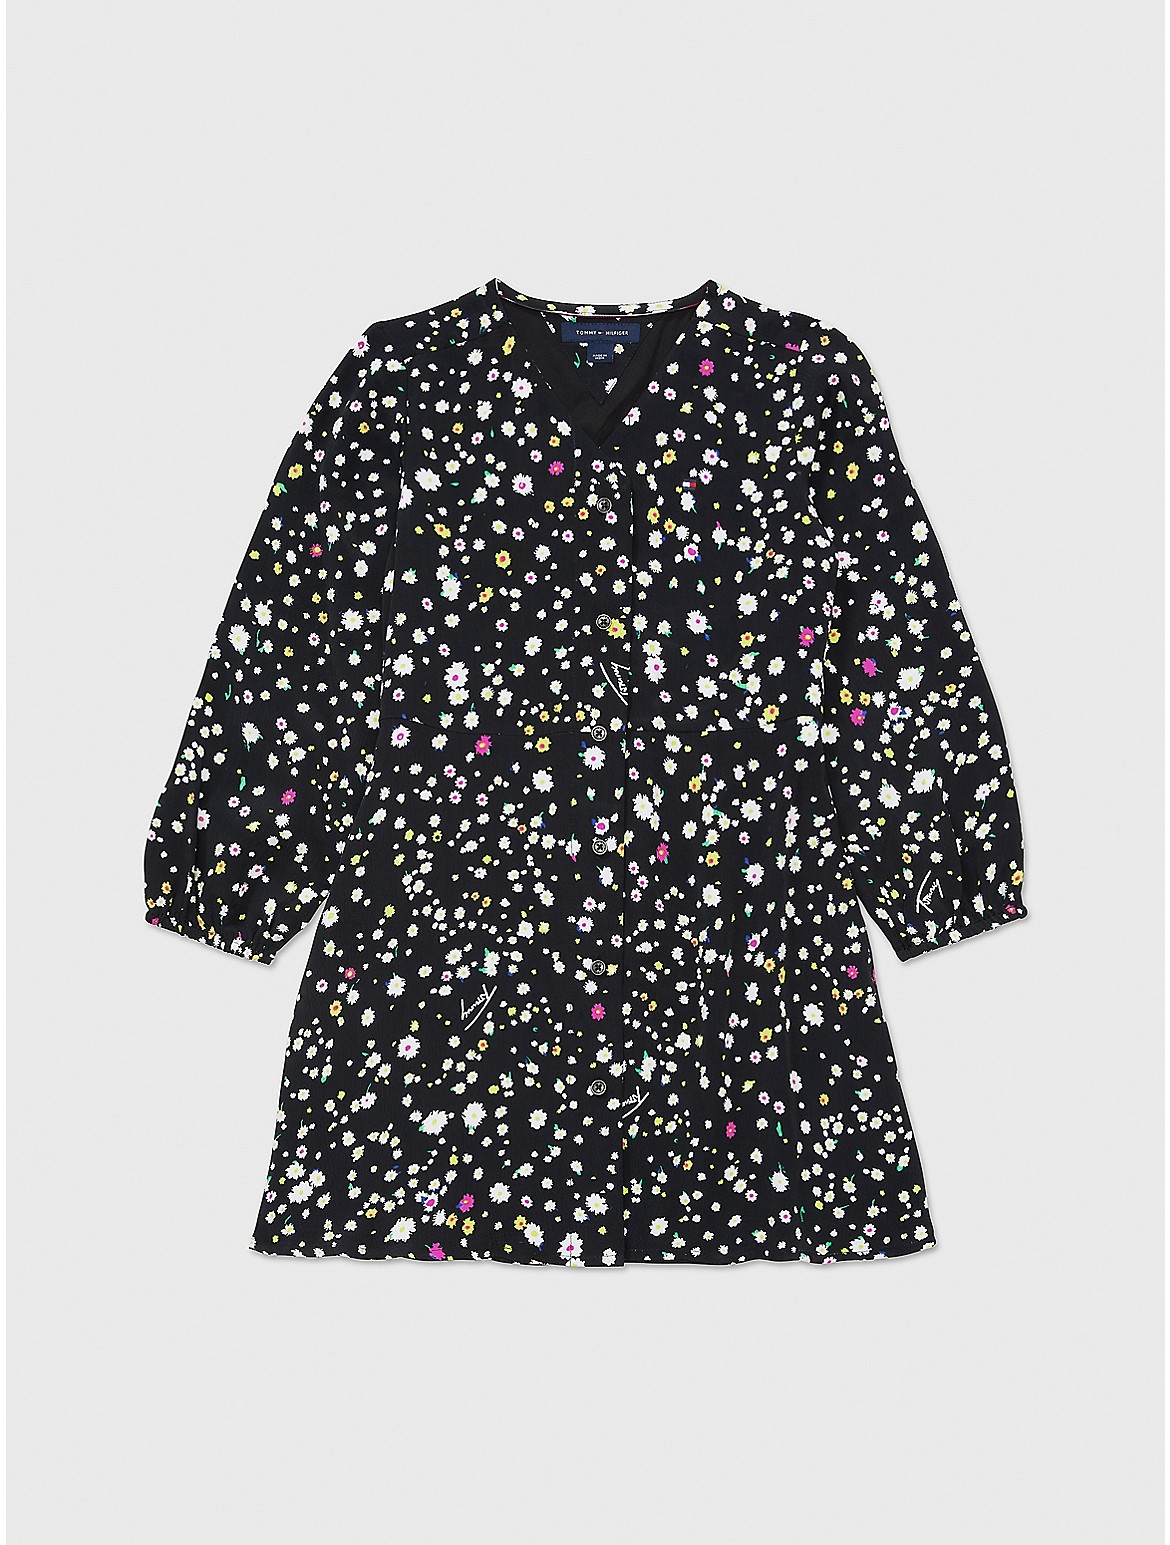 Tommy Hilfiger Girls' Floral Print Dress - Black - 12